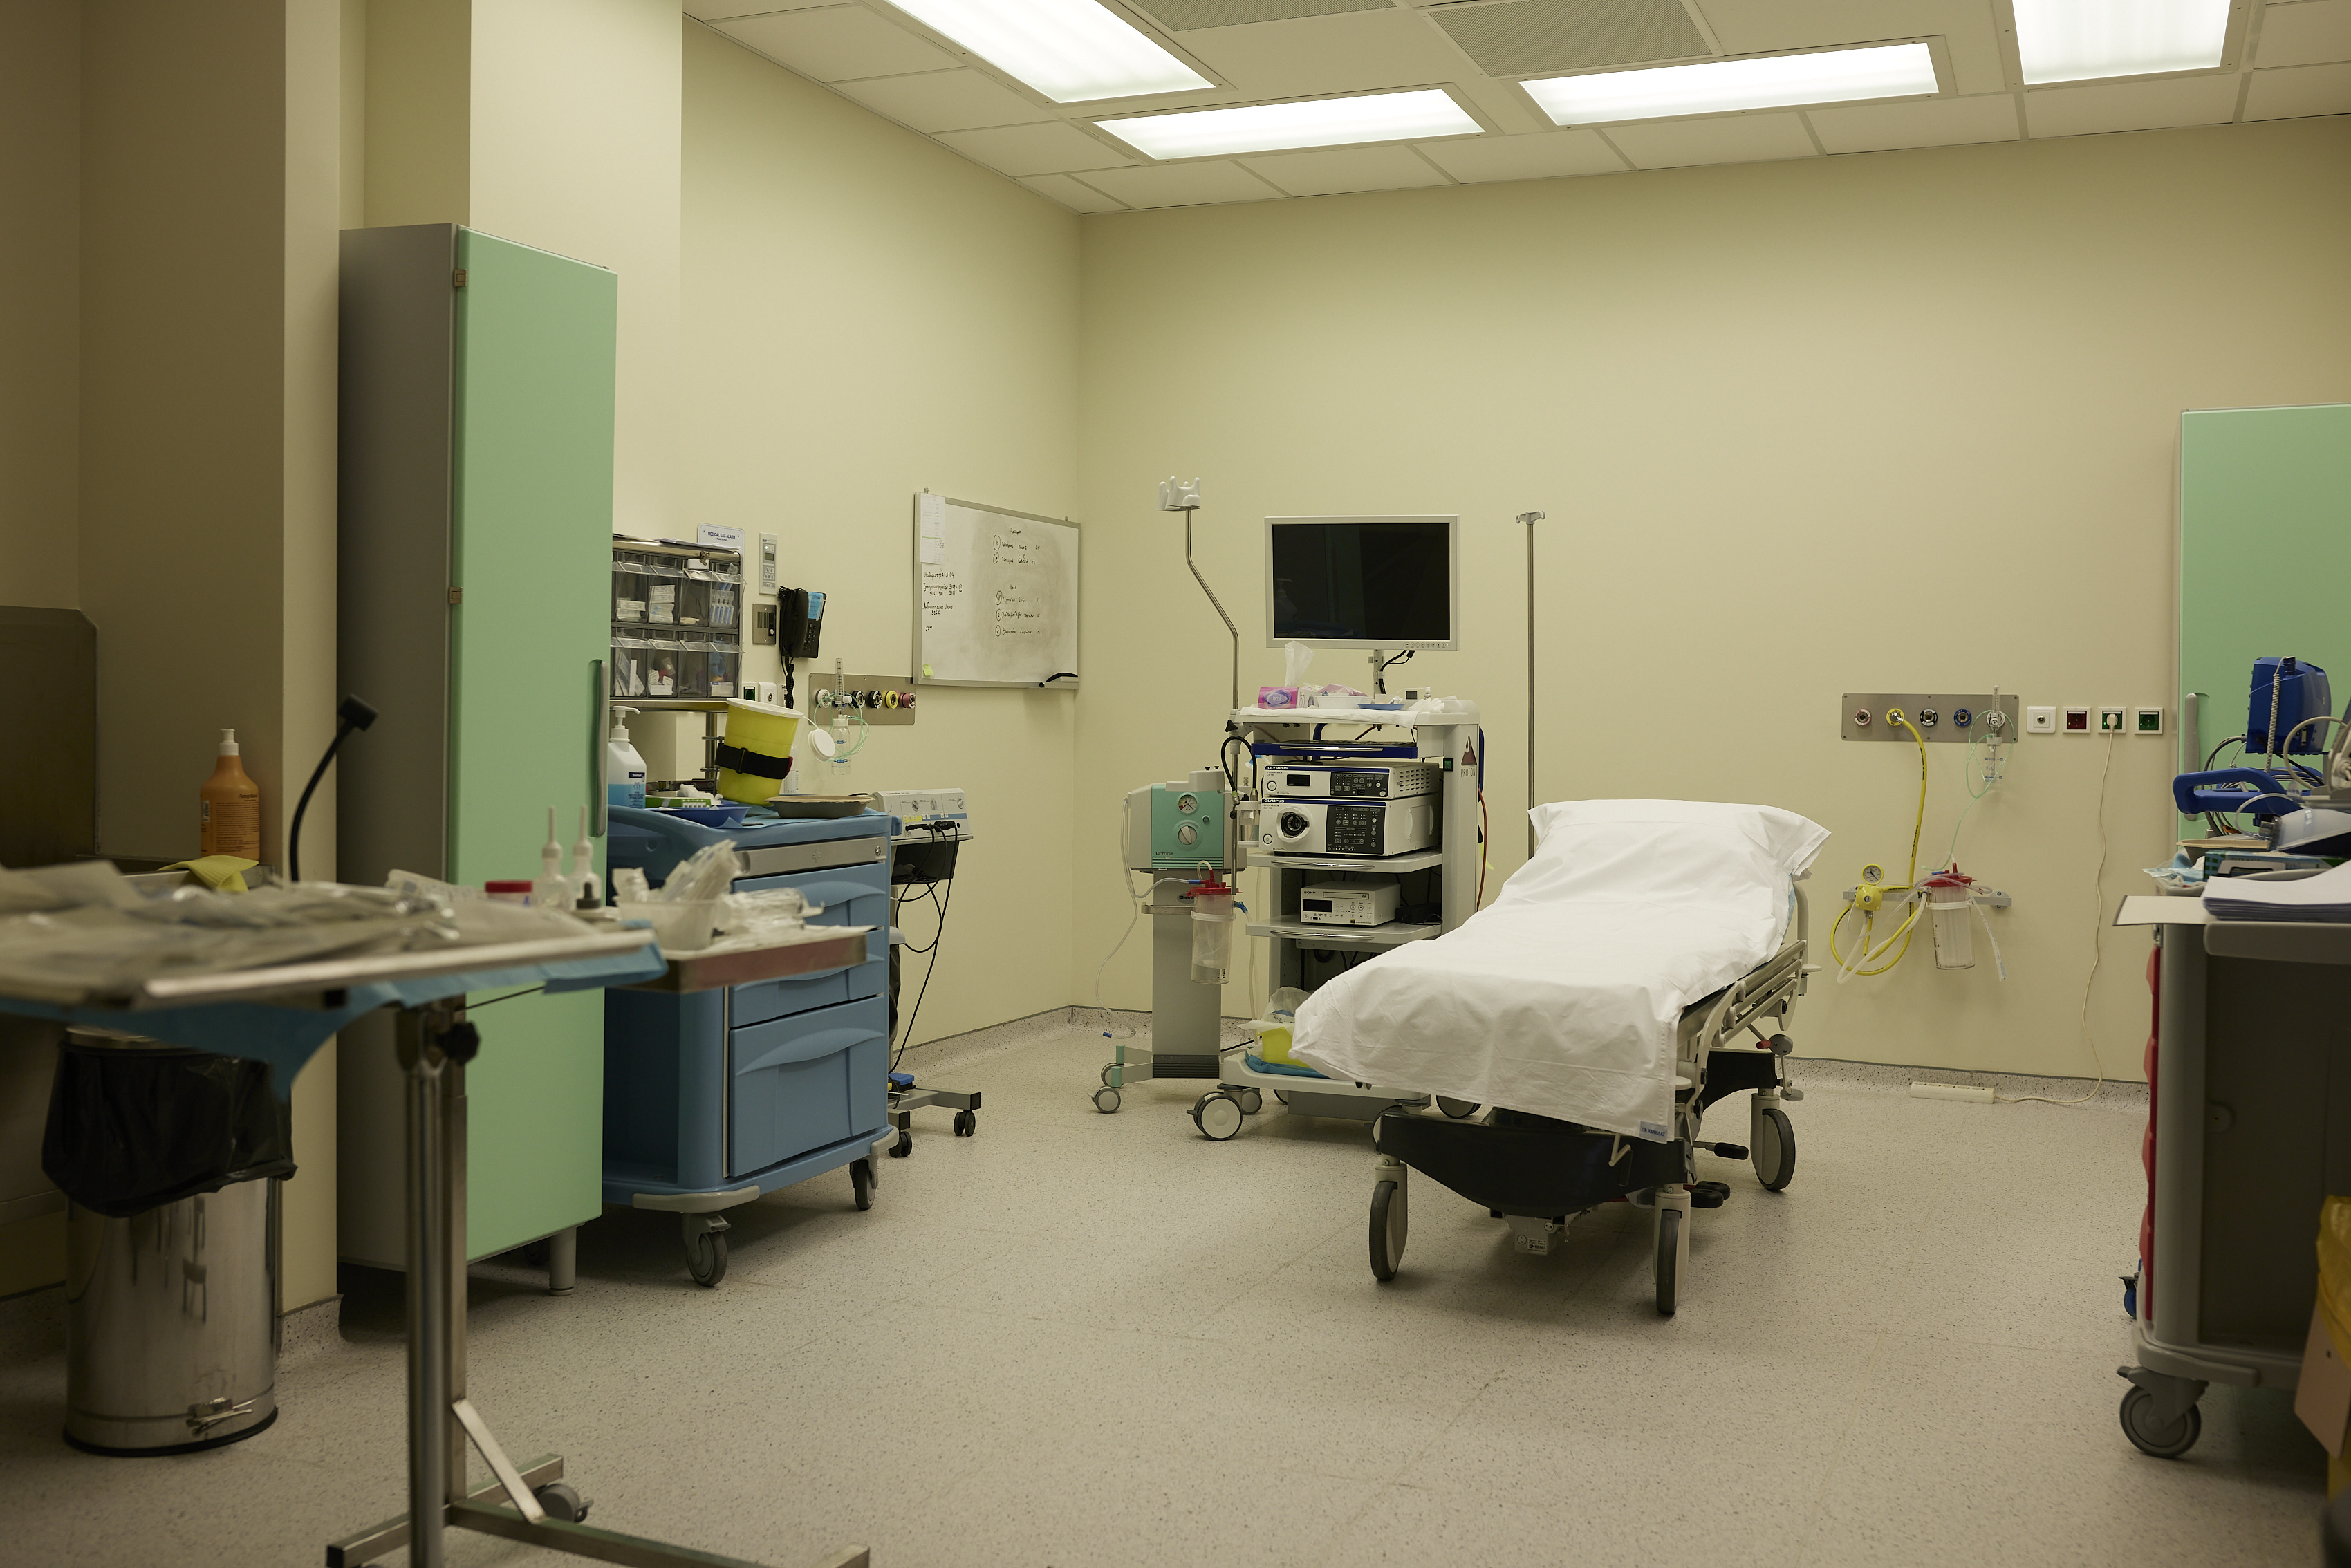 Κορονοϊός – Γ. Ν. Χαλκίδας: Τραγική η κατάσταση στο νοσοκομείο! Θετικός ασθενής που επρόκειτο να χειρουργηθεί